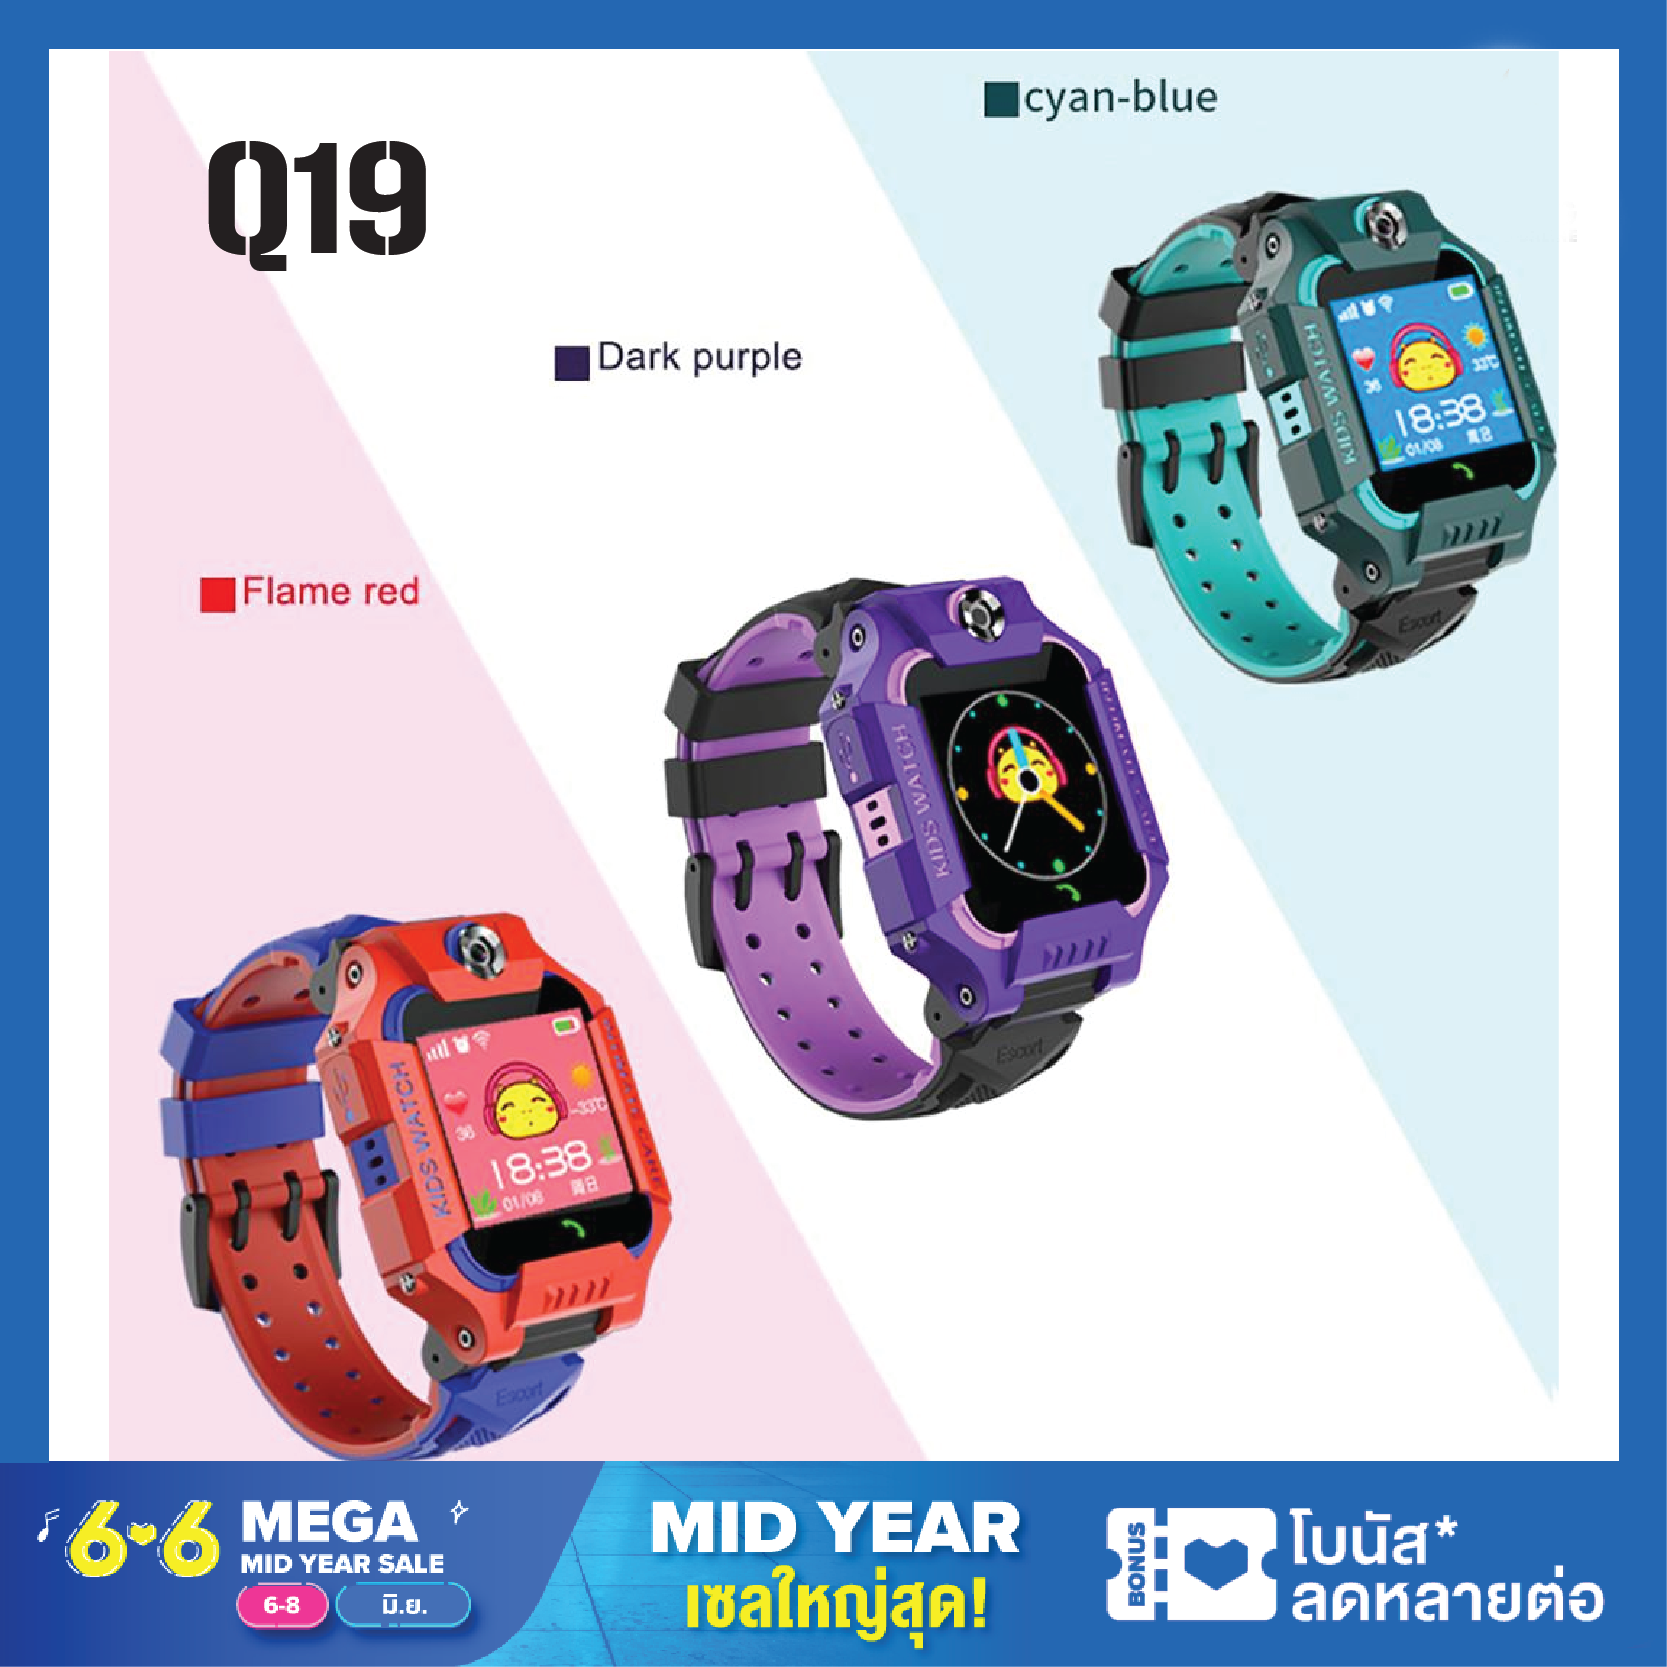 [เนนูภาษาไทย] นาฬิกาไอโมเด็ก Z6 นาฬิกาเด็ก Q12 Q88 นาฬิกาเพื่อสุขภาพ กันเด็กหาย เด็กดูสมาร์ทโฟนโทรศัพท์นาฬิกาหน้าจอสัมผัสSOS+LBS ใส่ซิมได้ นาฬิกาโทรศัพท์ นาฬิกาอัจริยะ เด็กผู้หญิง เด็กผู้ชาย ยกจอได้ หมุน360 2G ตำแหน่งนาฬิกาซิม Q19 Kids SmartWatch